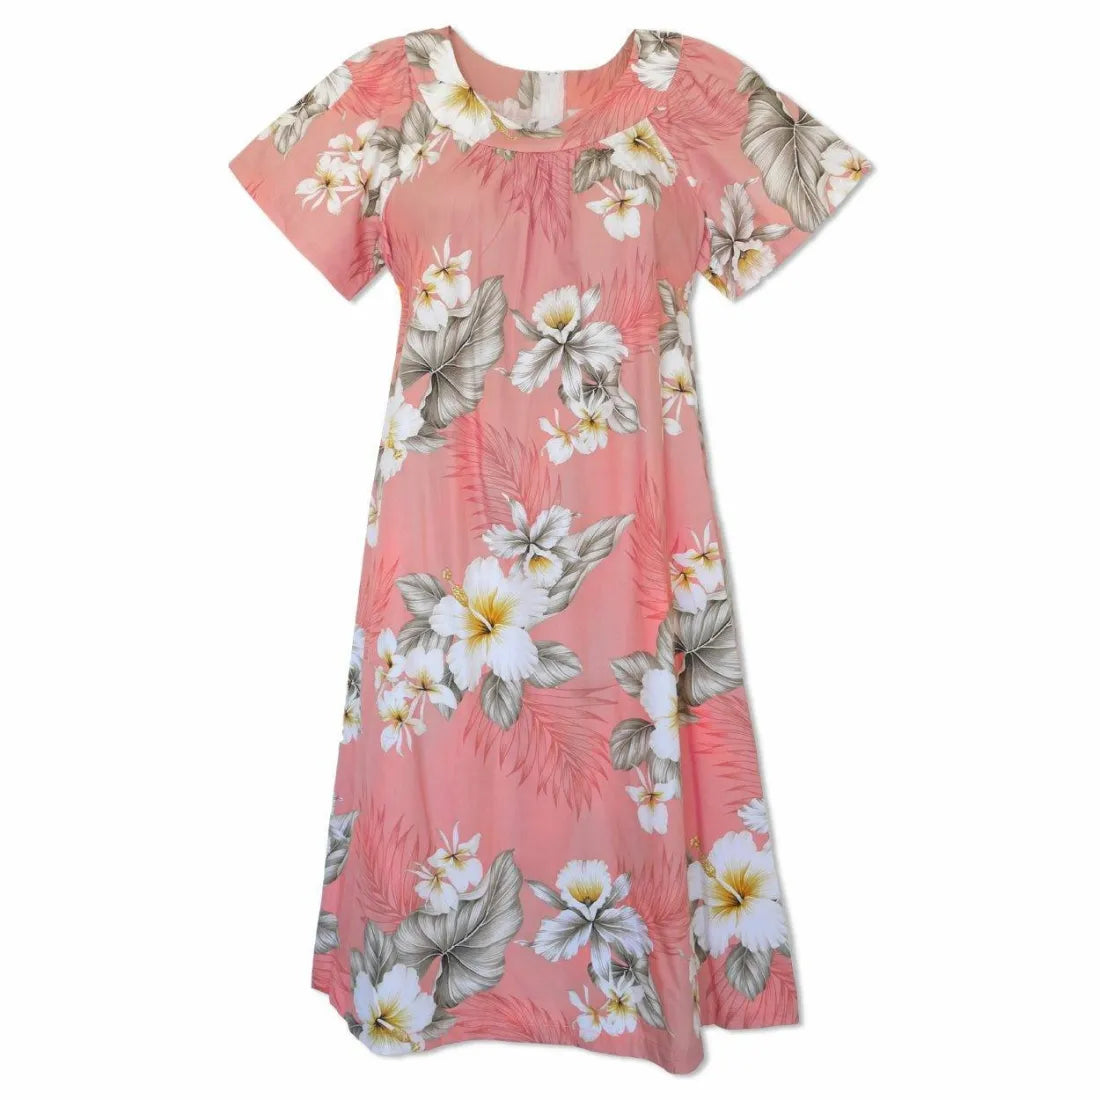 Hibiscus Joy Pink Cotton Hawaiian Tea Muumuu Dress - Made In Hawaii